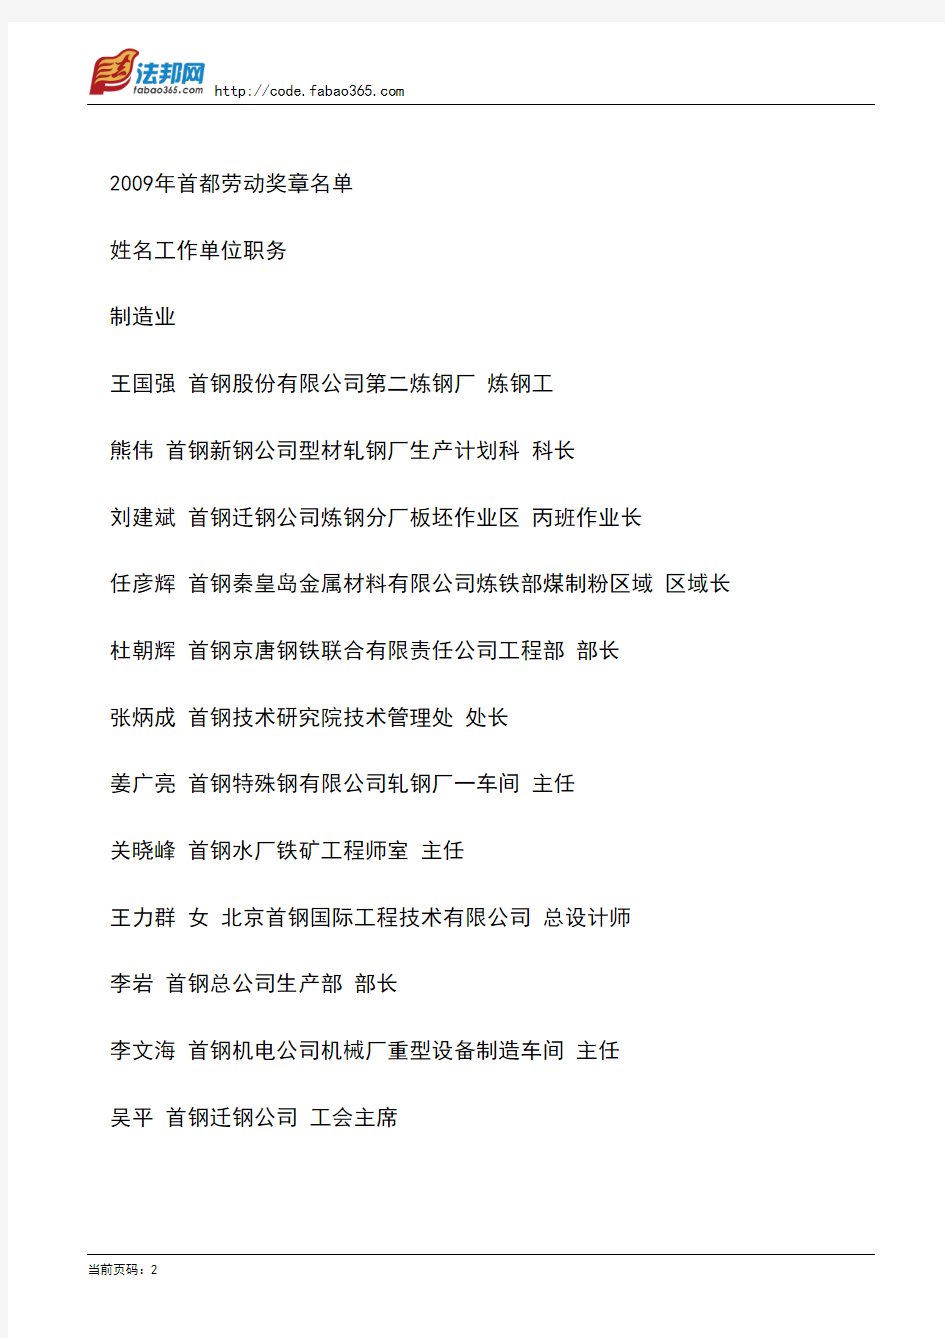 北京市总工会关于颁发2009年首都劳动奖章、首都劳动奖状命名北京市工人先锋号的决定